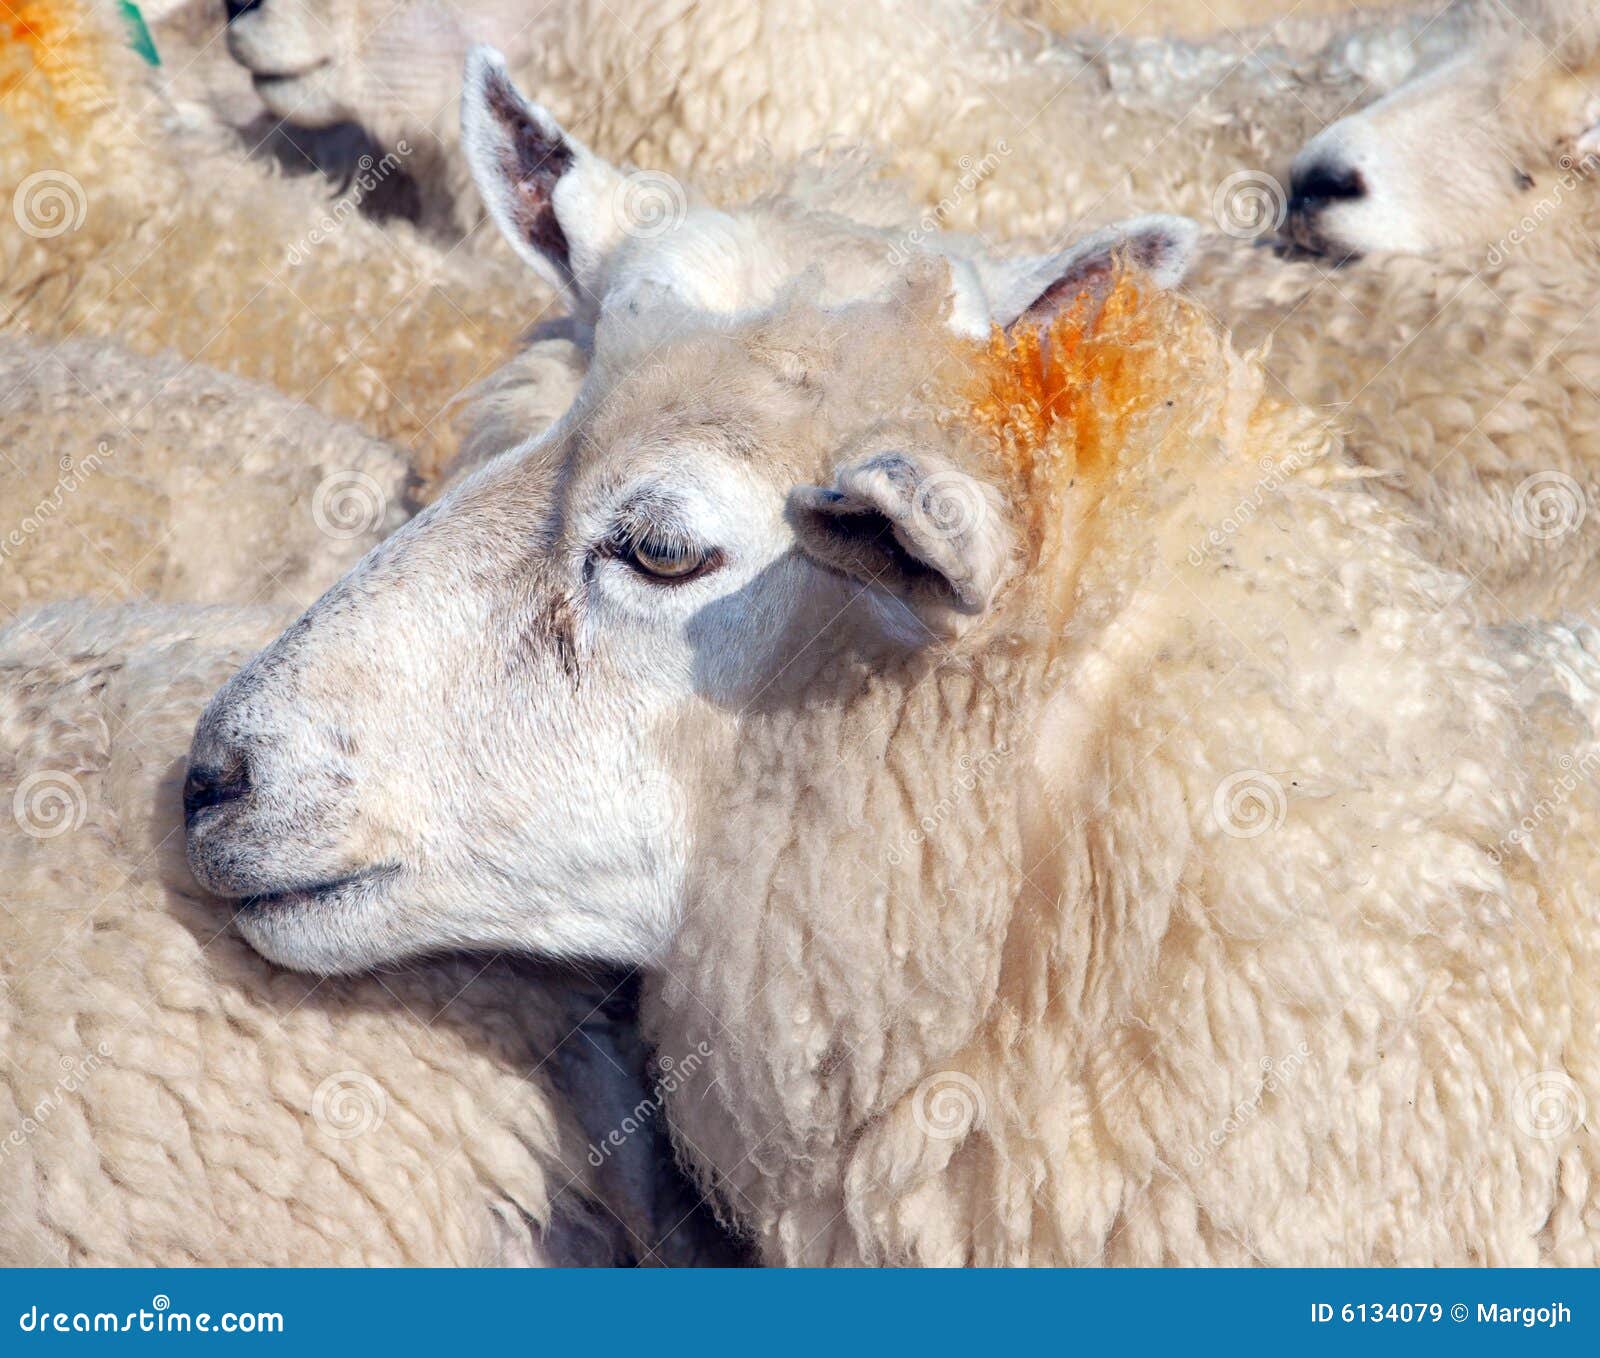 母羊和两只小羊高清摄影大图-千库网